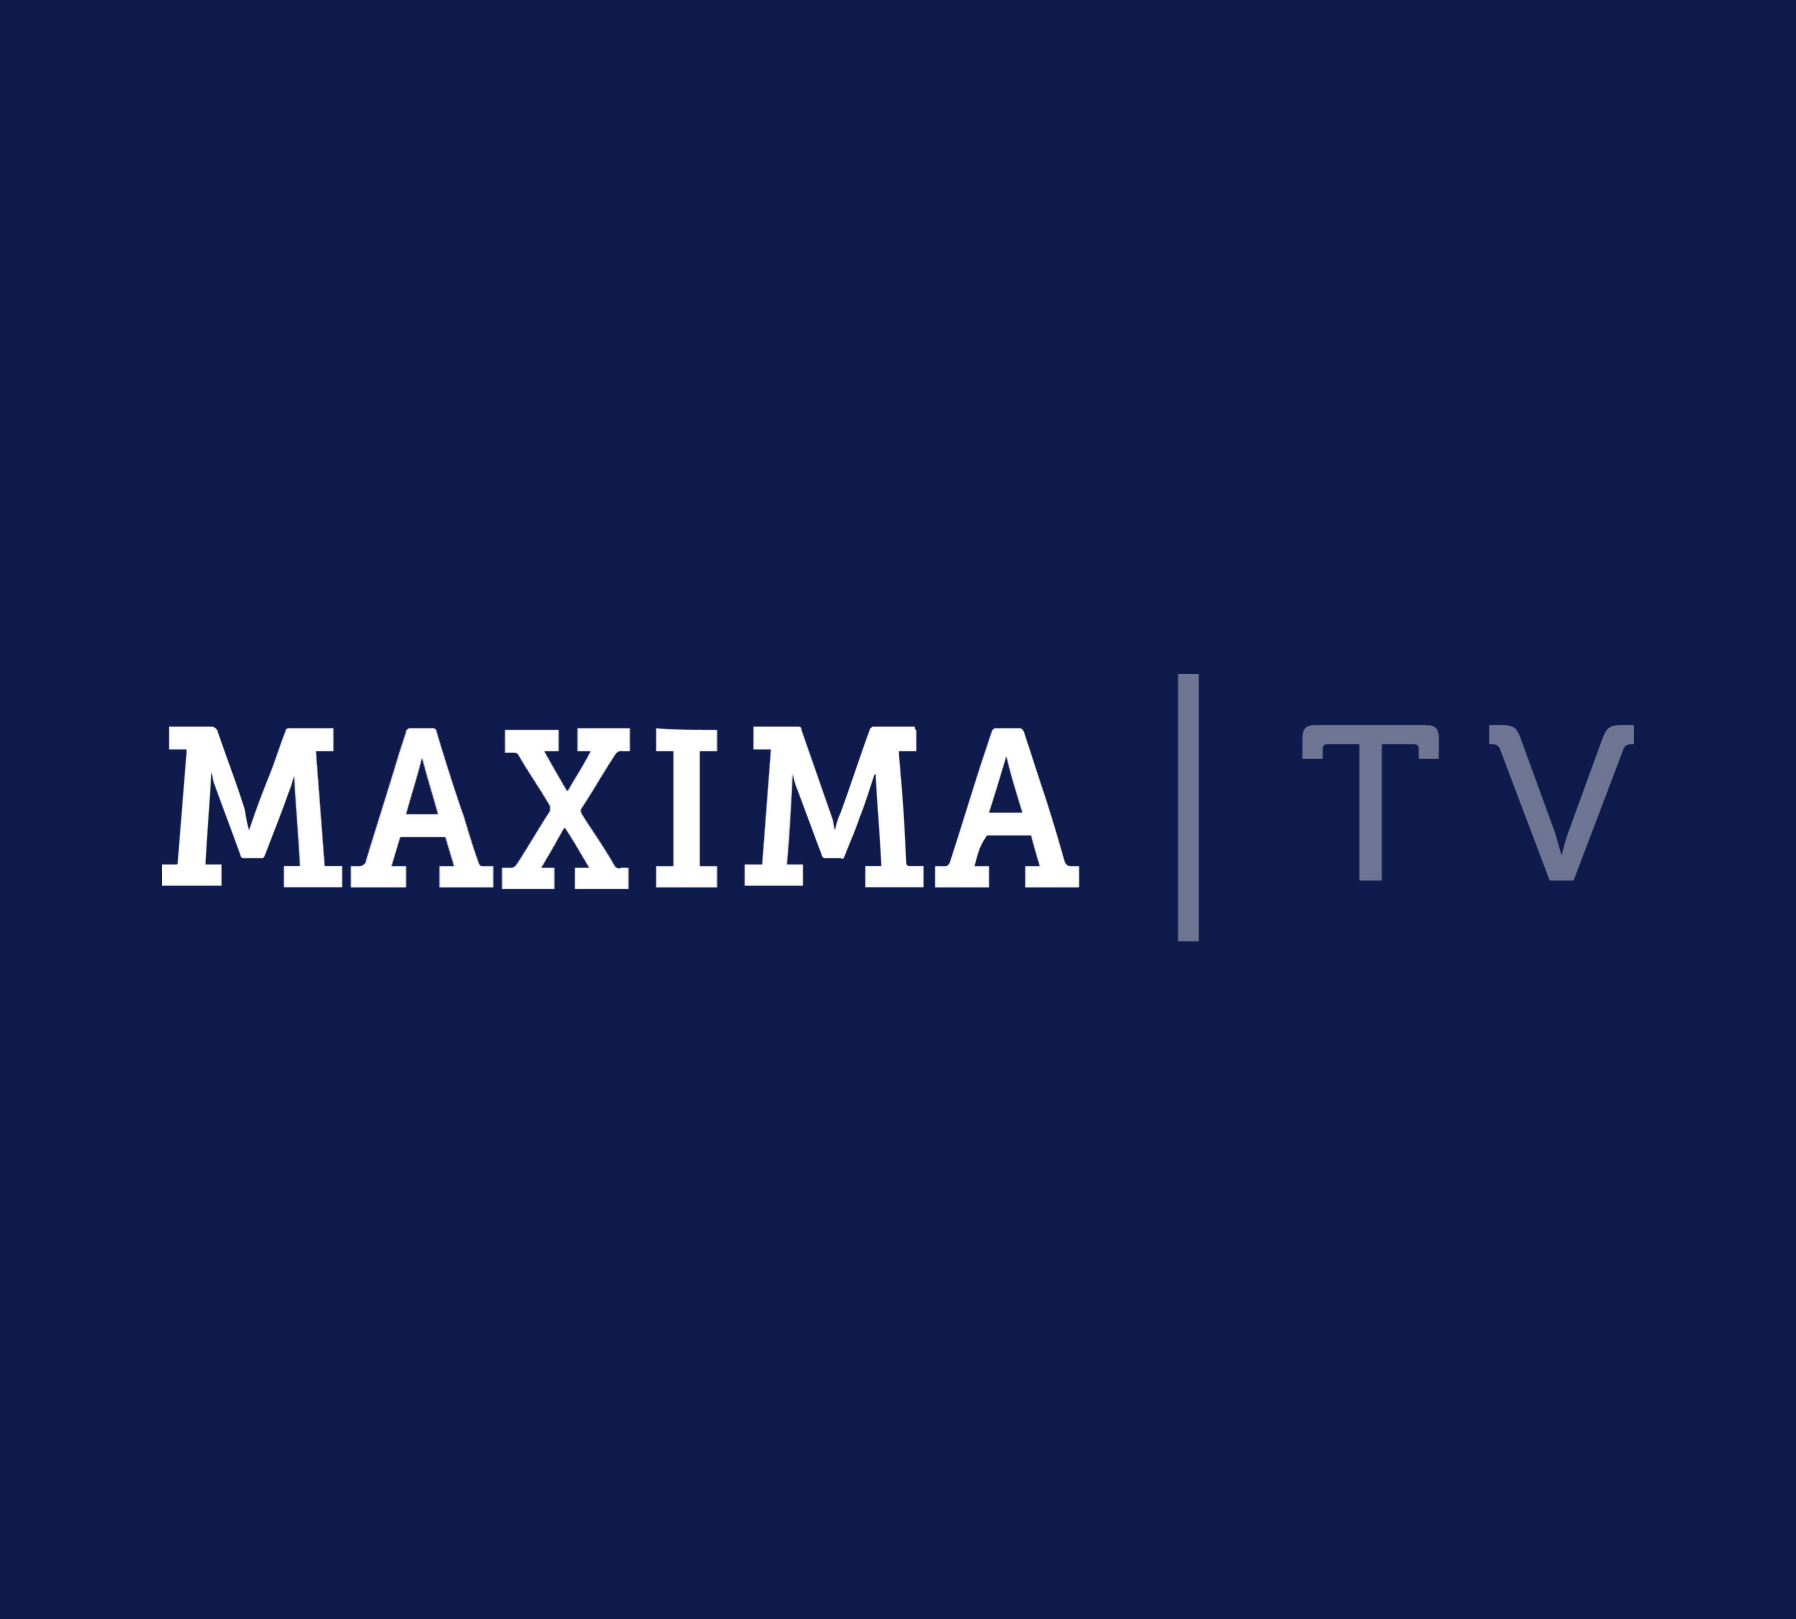 MAXIMA TV